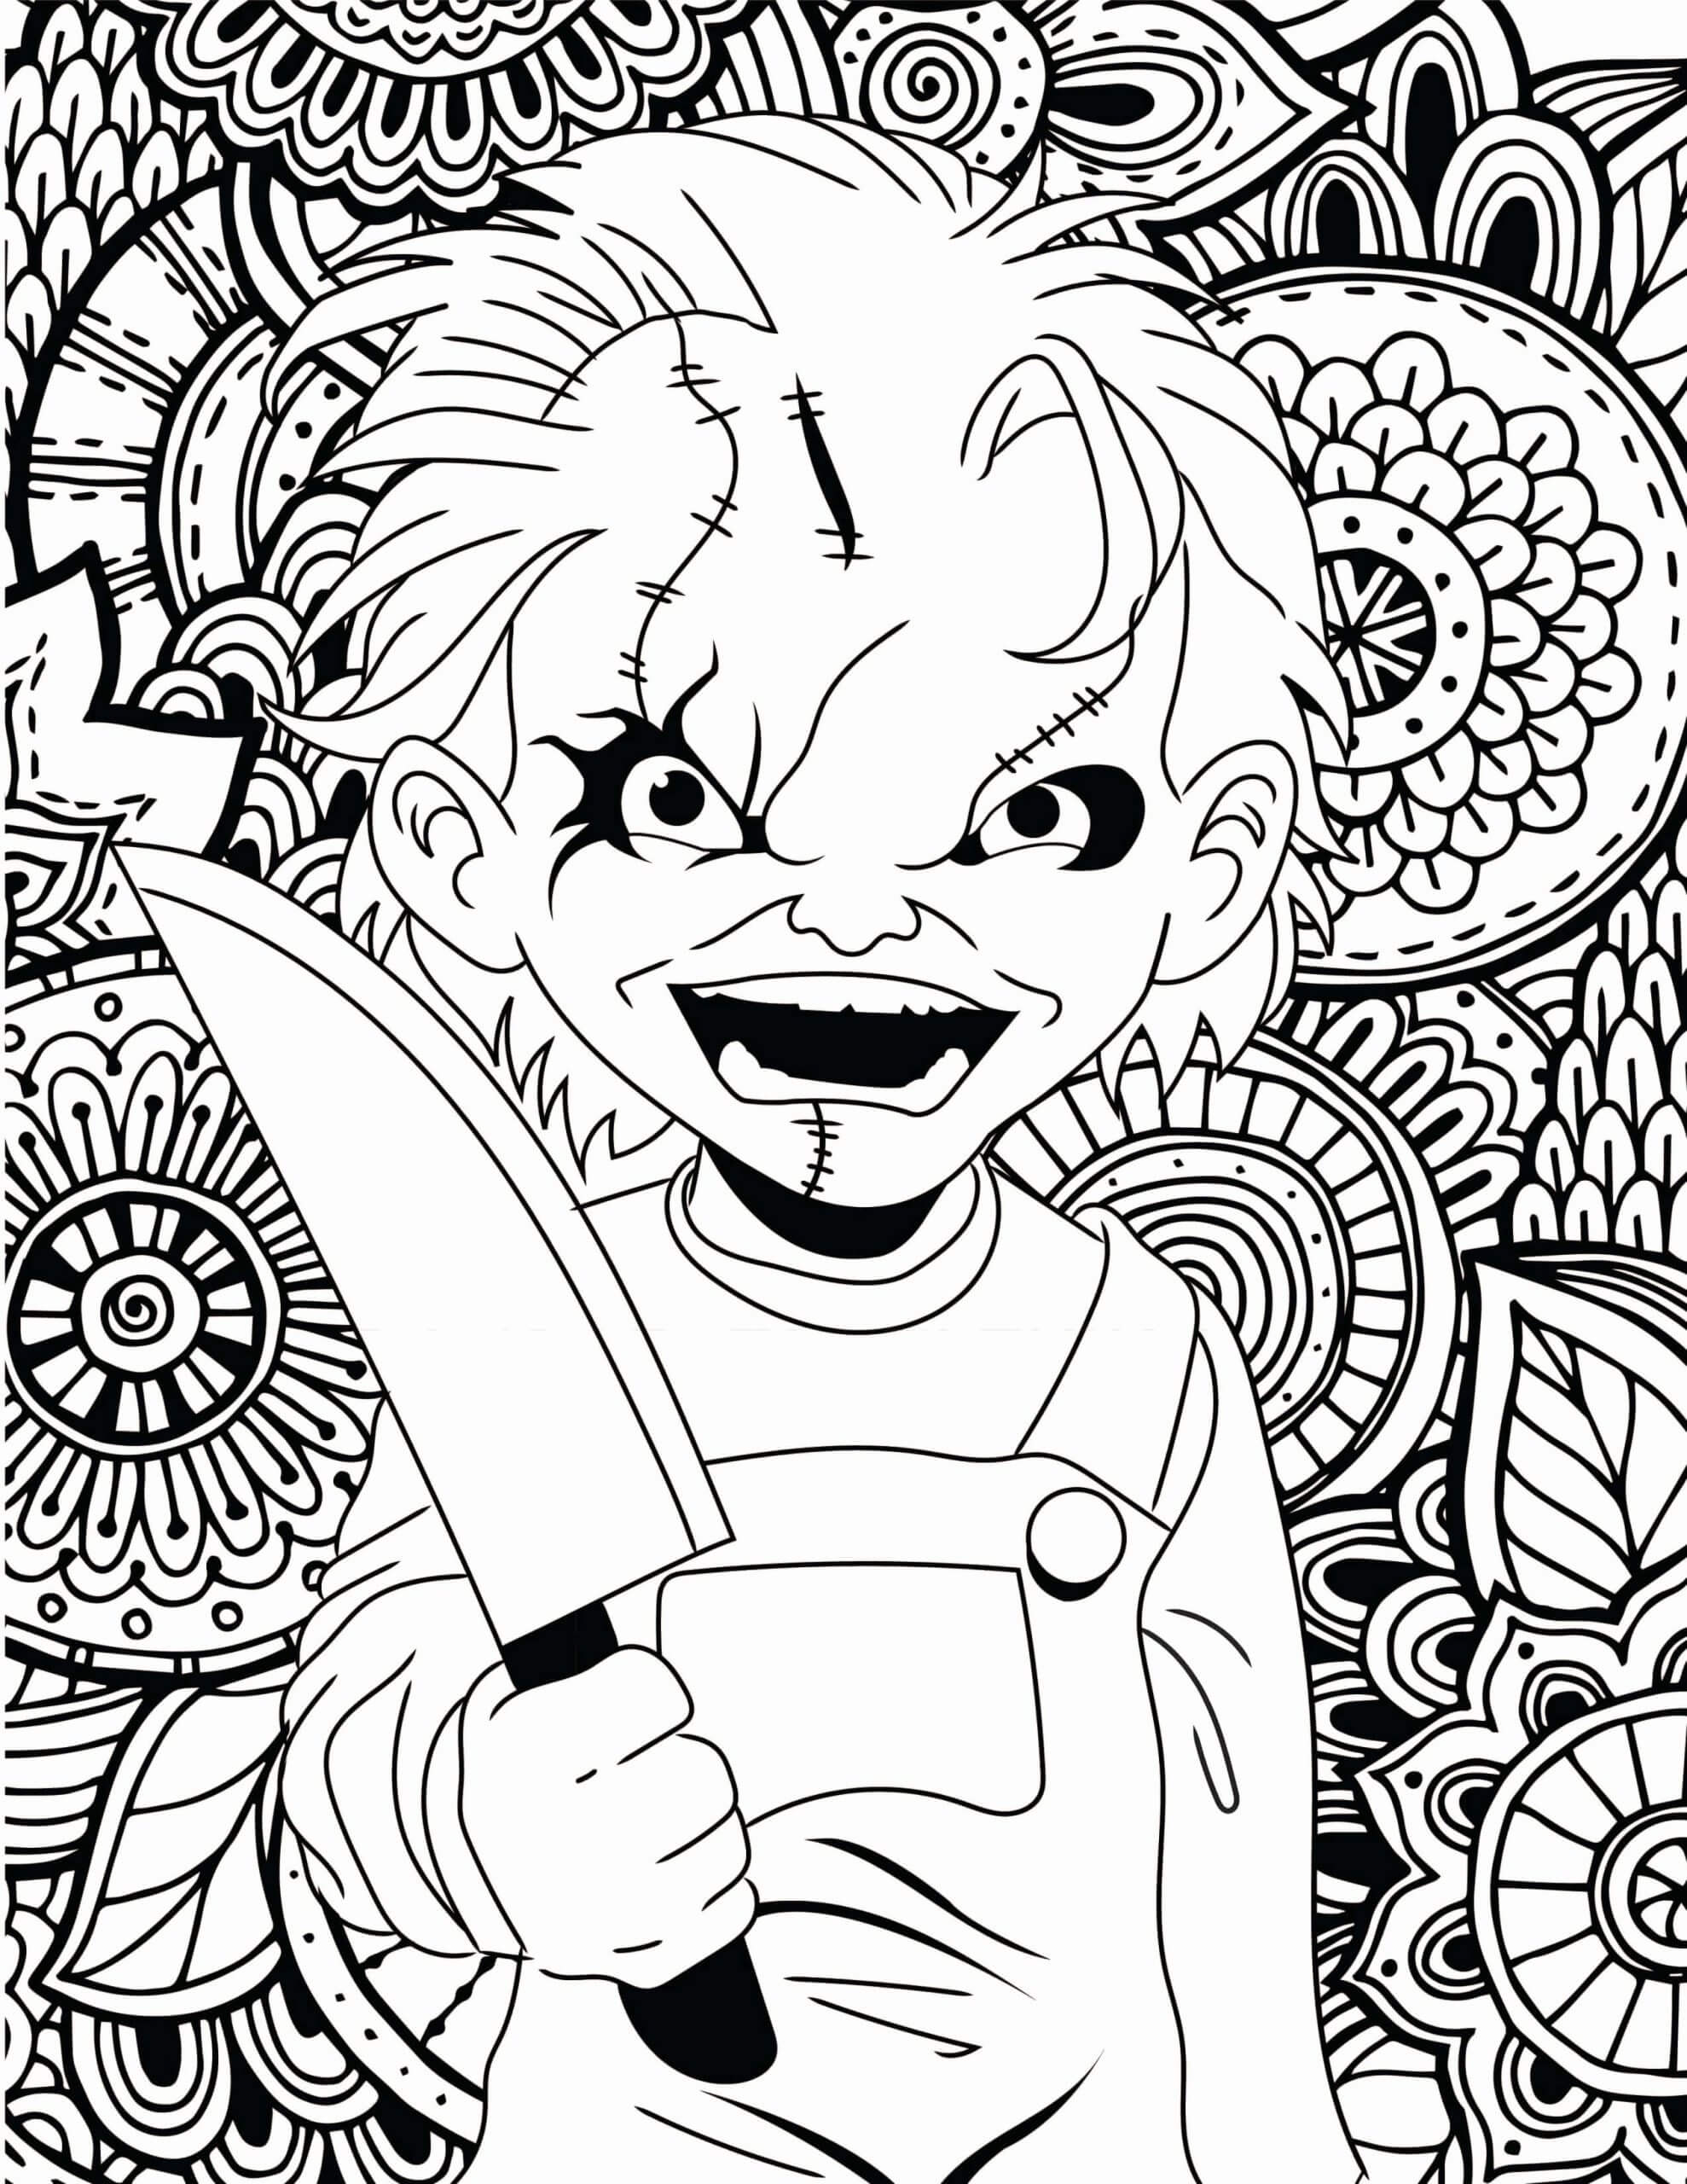 Dibujos de Chucky Perfecto para colorear